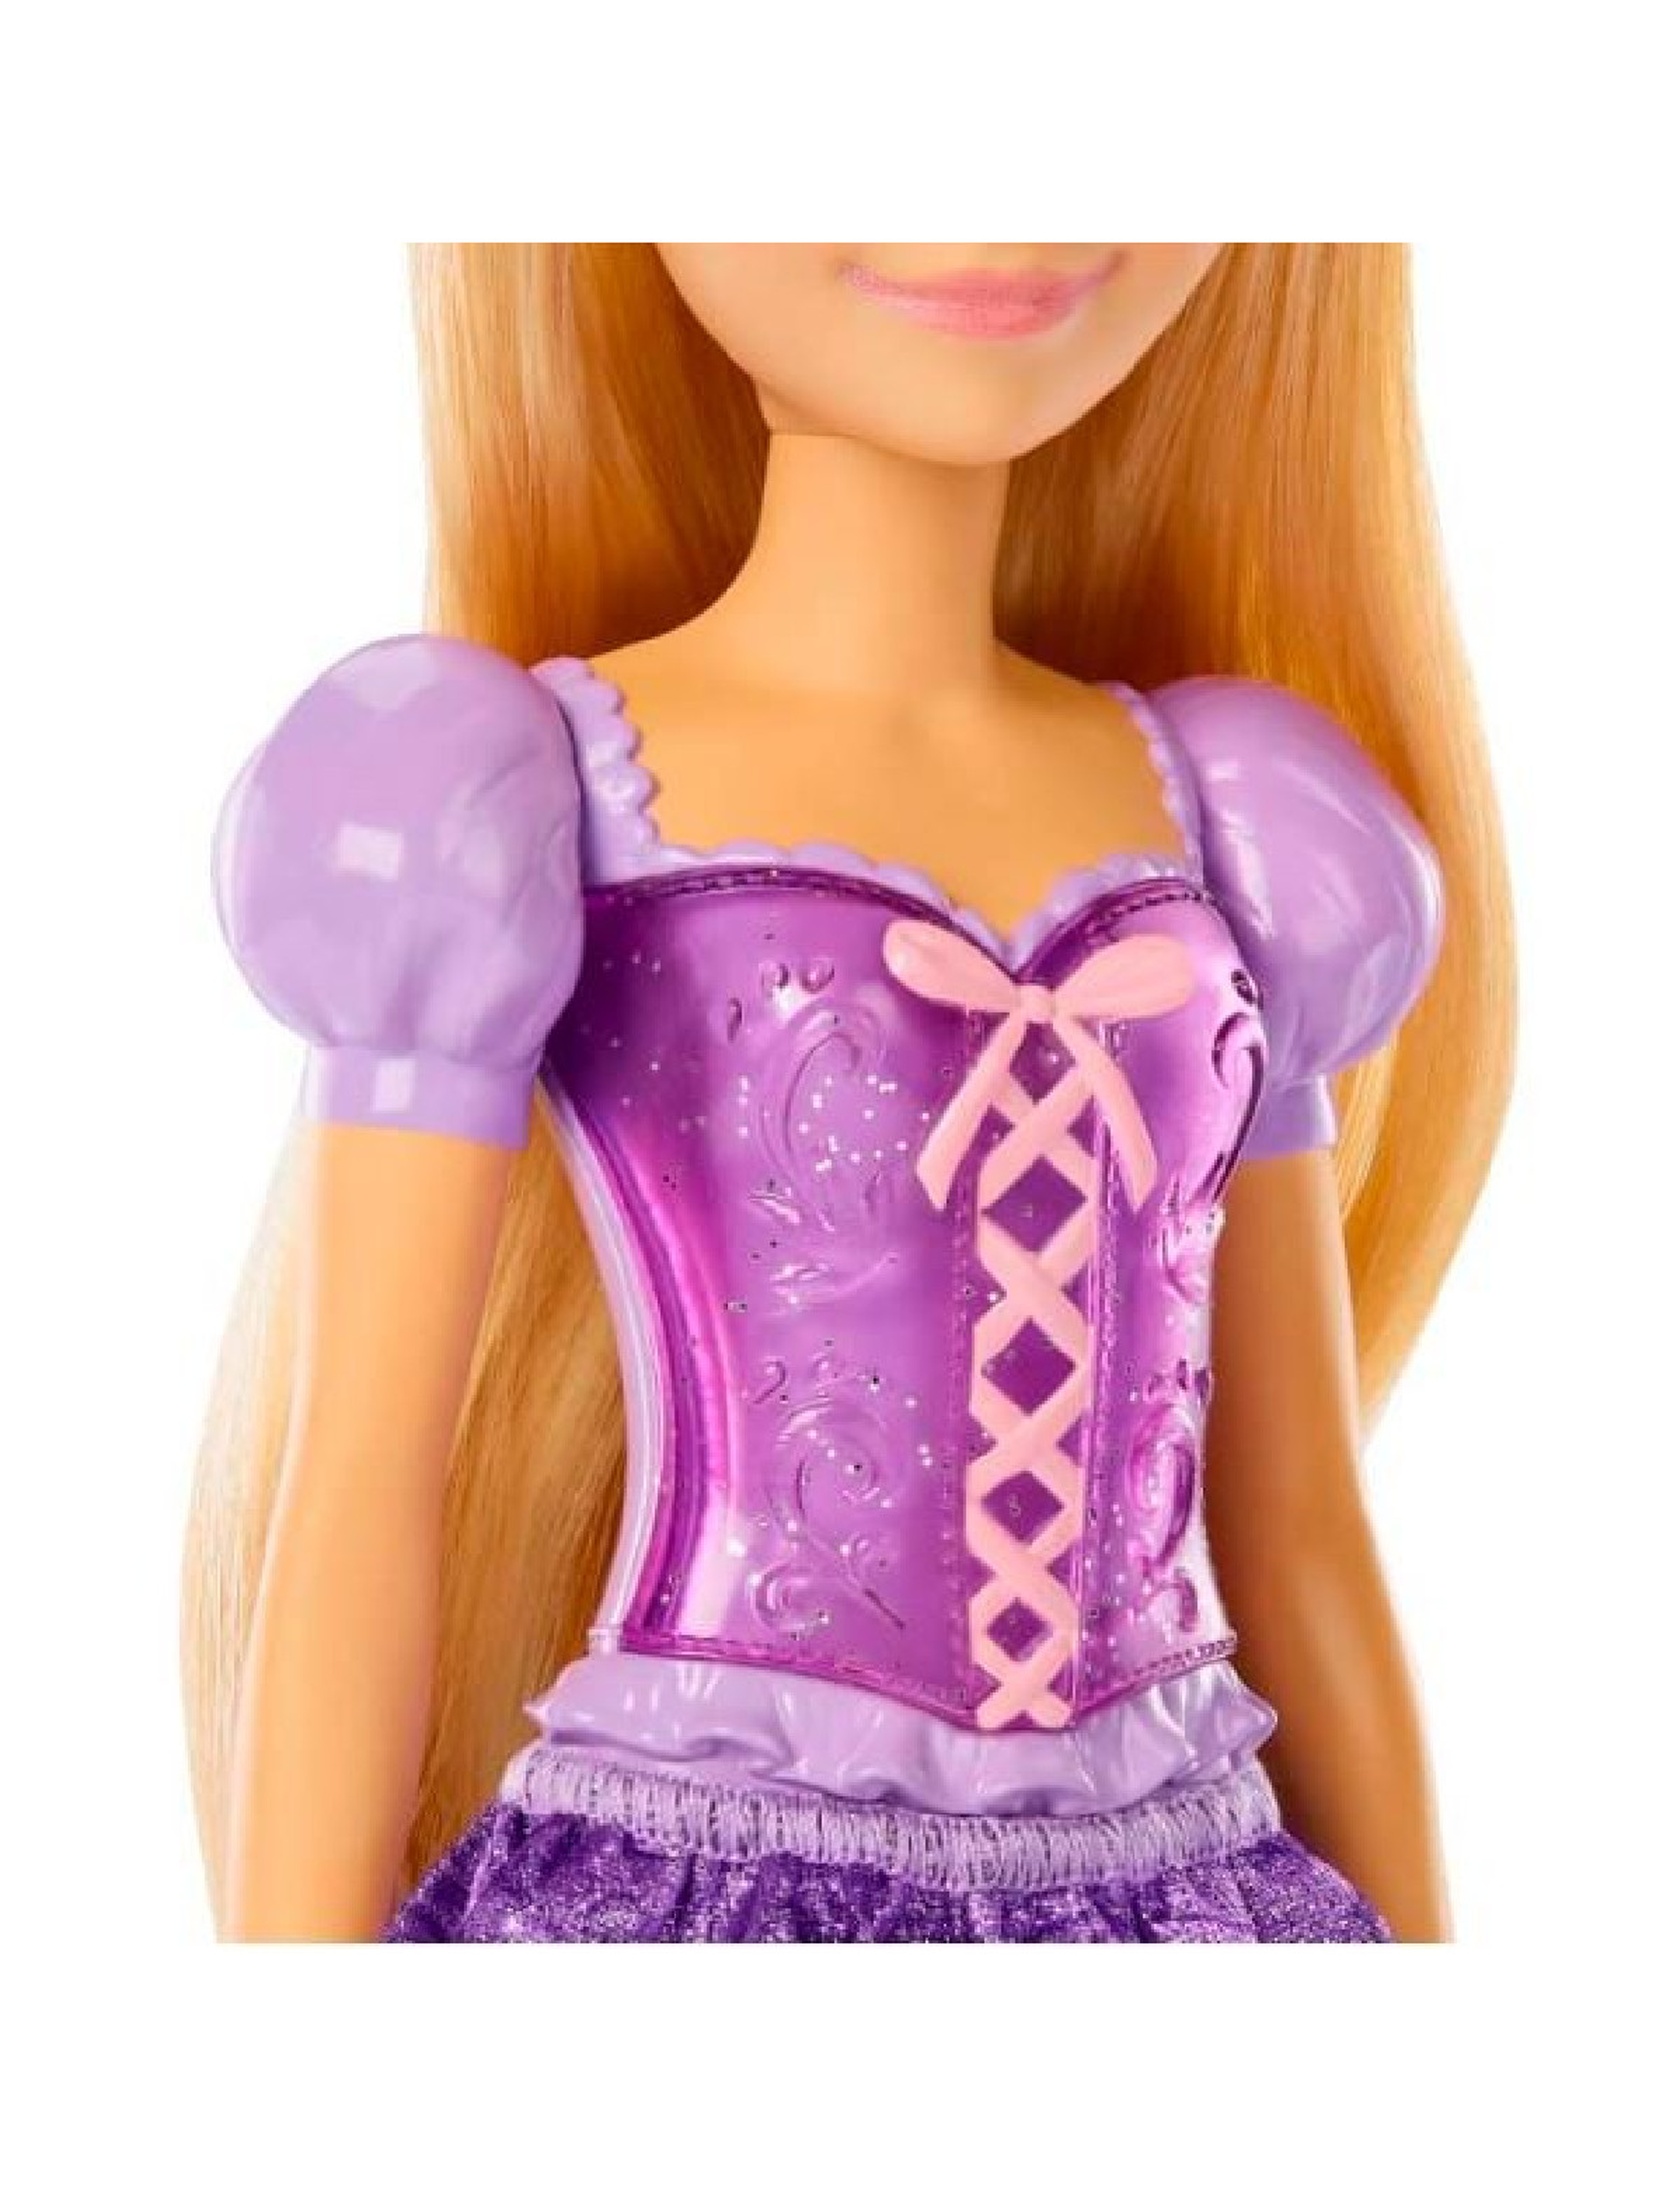 Lalka Disney Princess- księżniczka Roszpunka